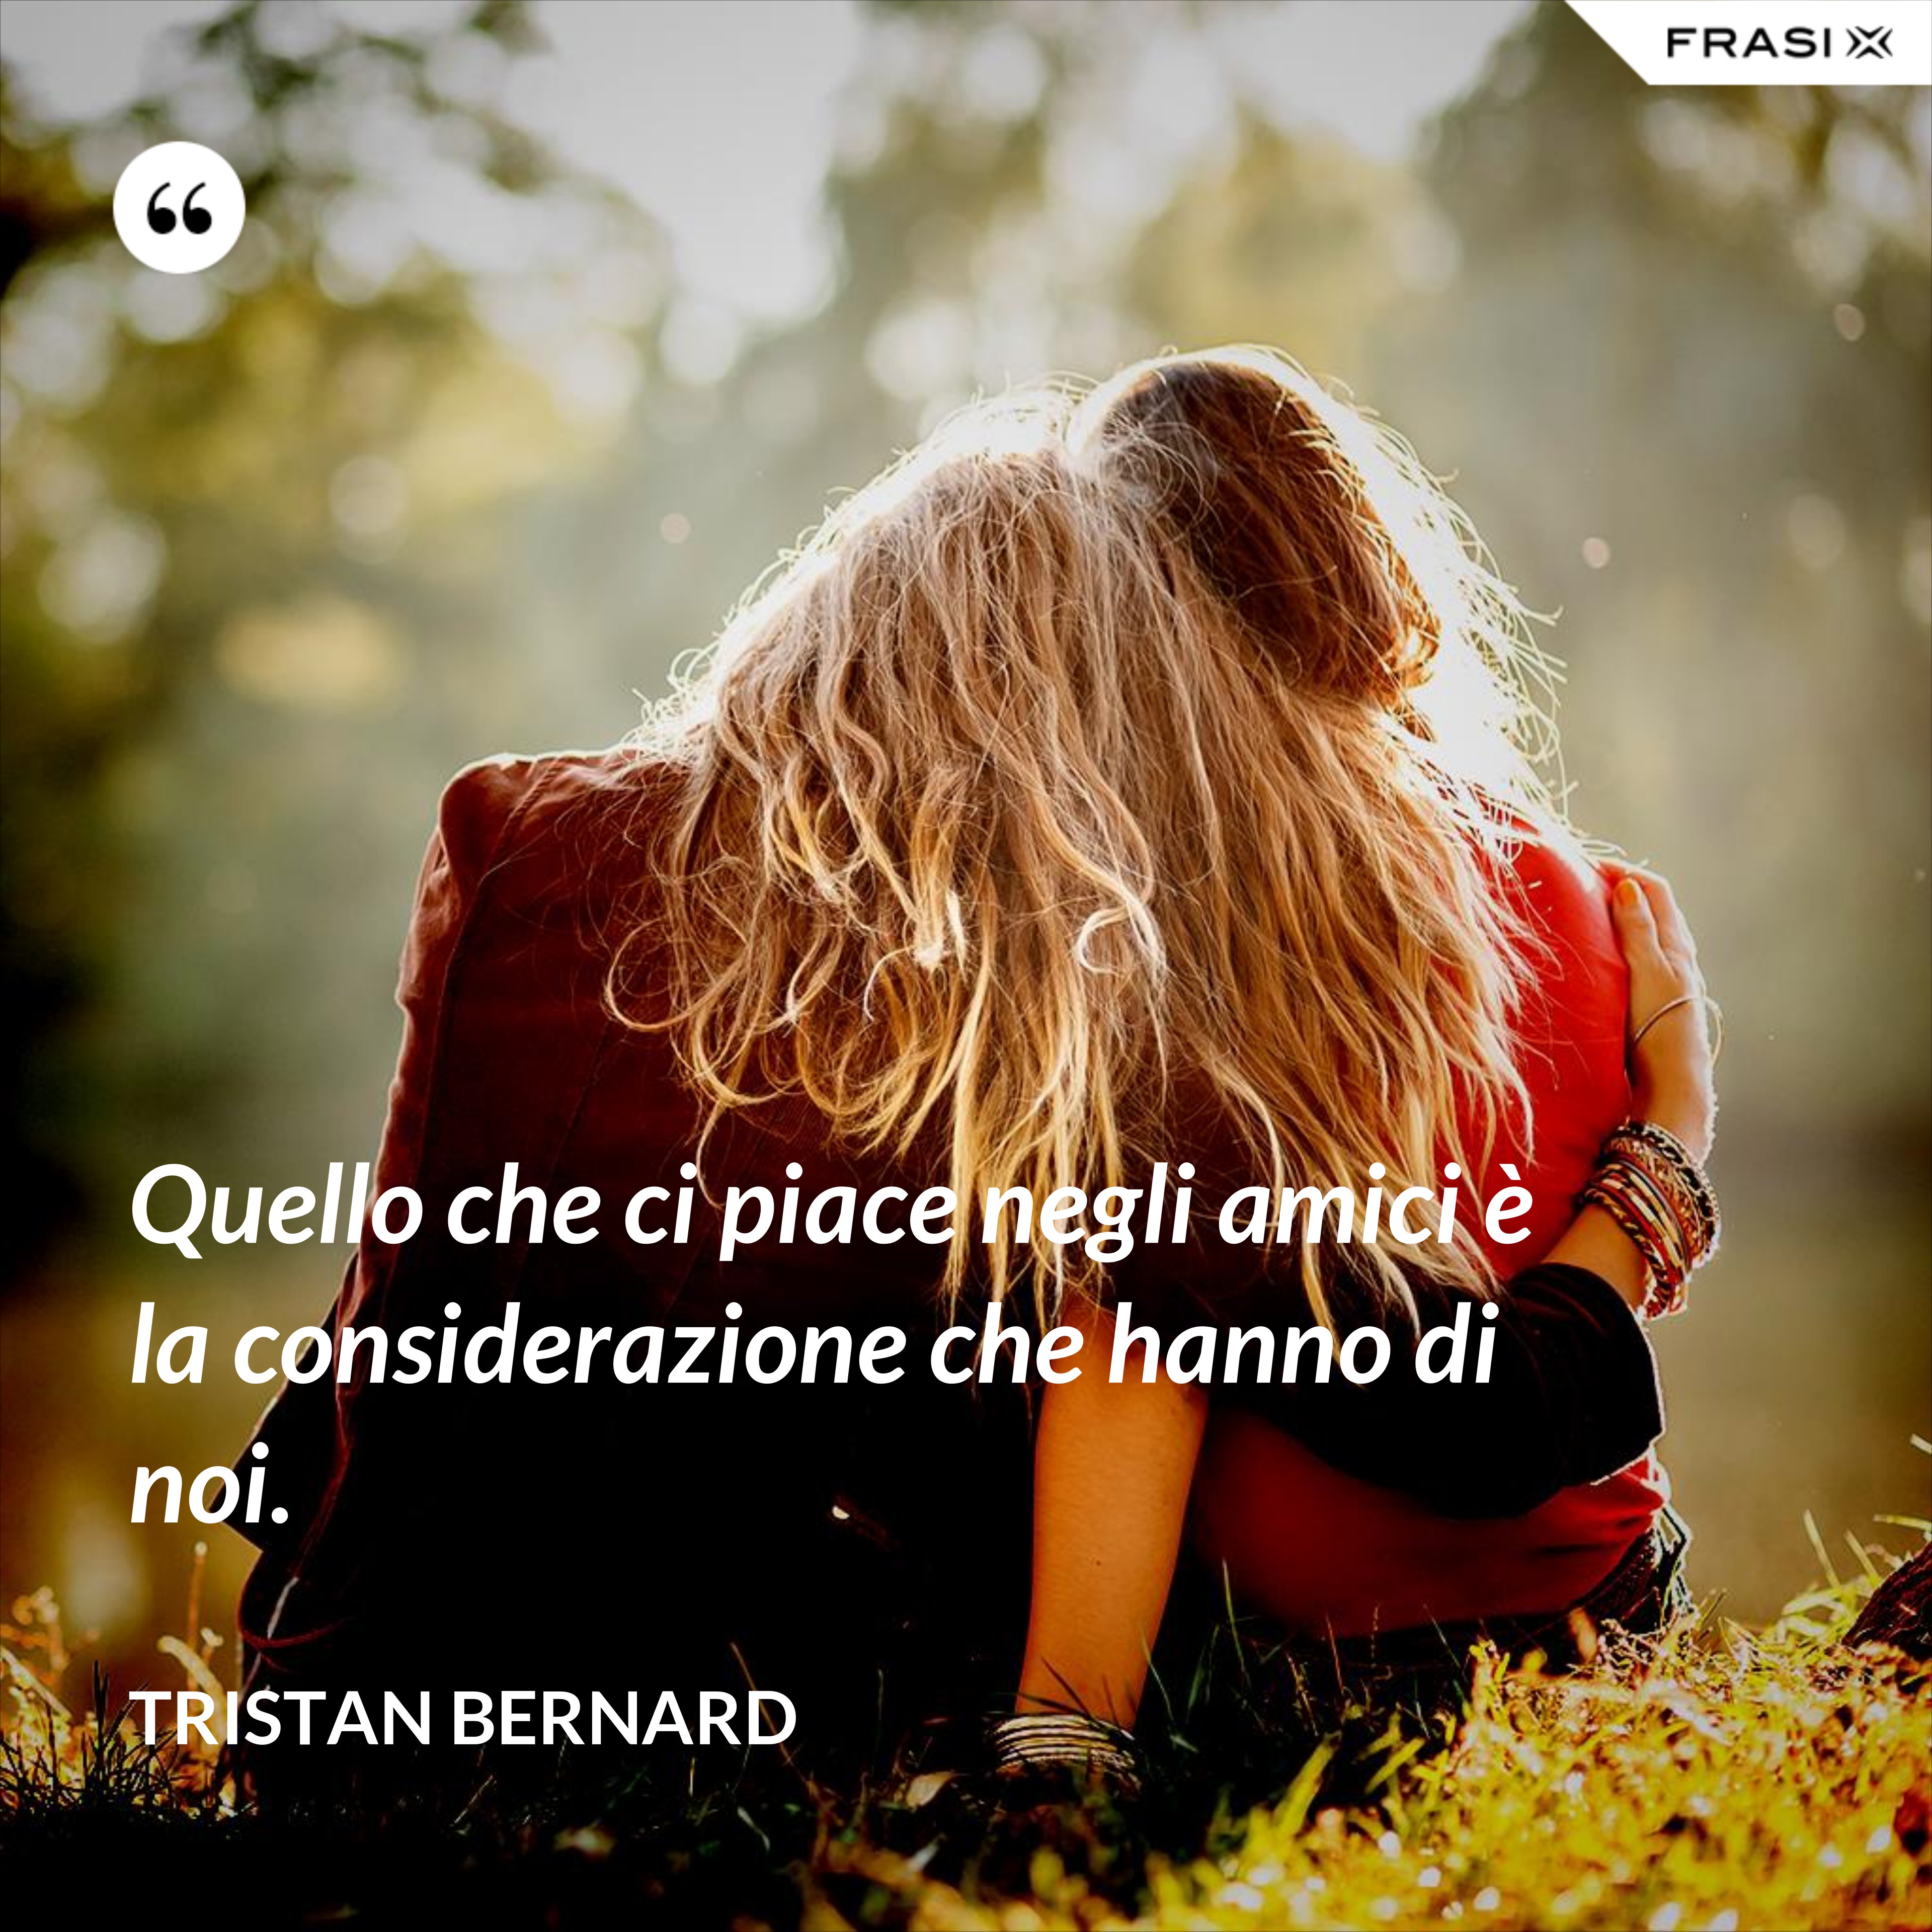 Quello che ci piace negli amici è la considerazione che hanno di noi. - Tristan Bernard